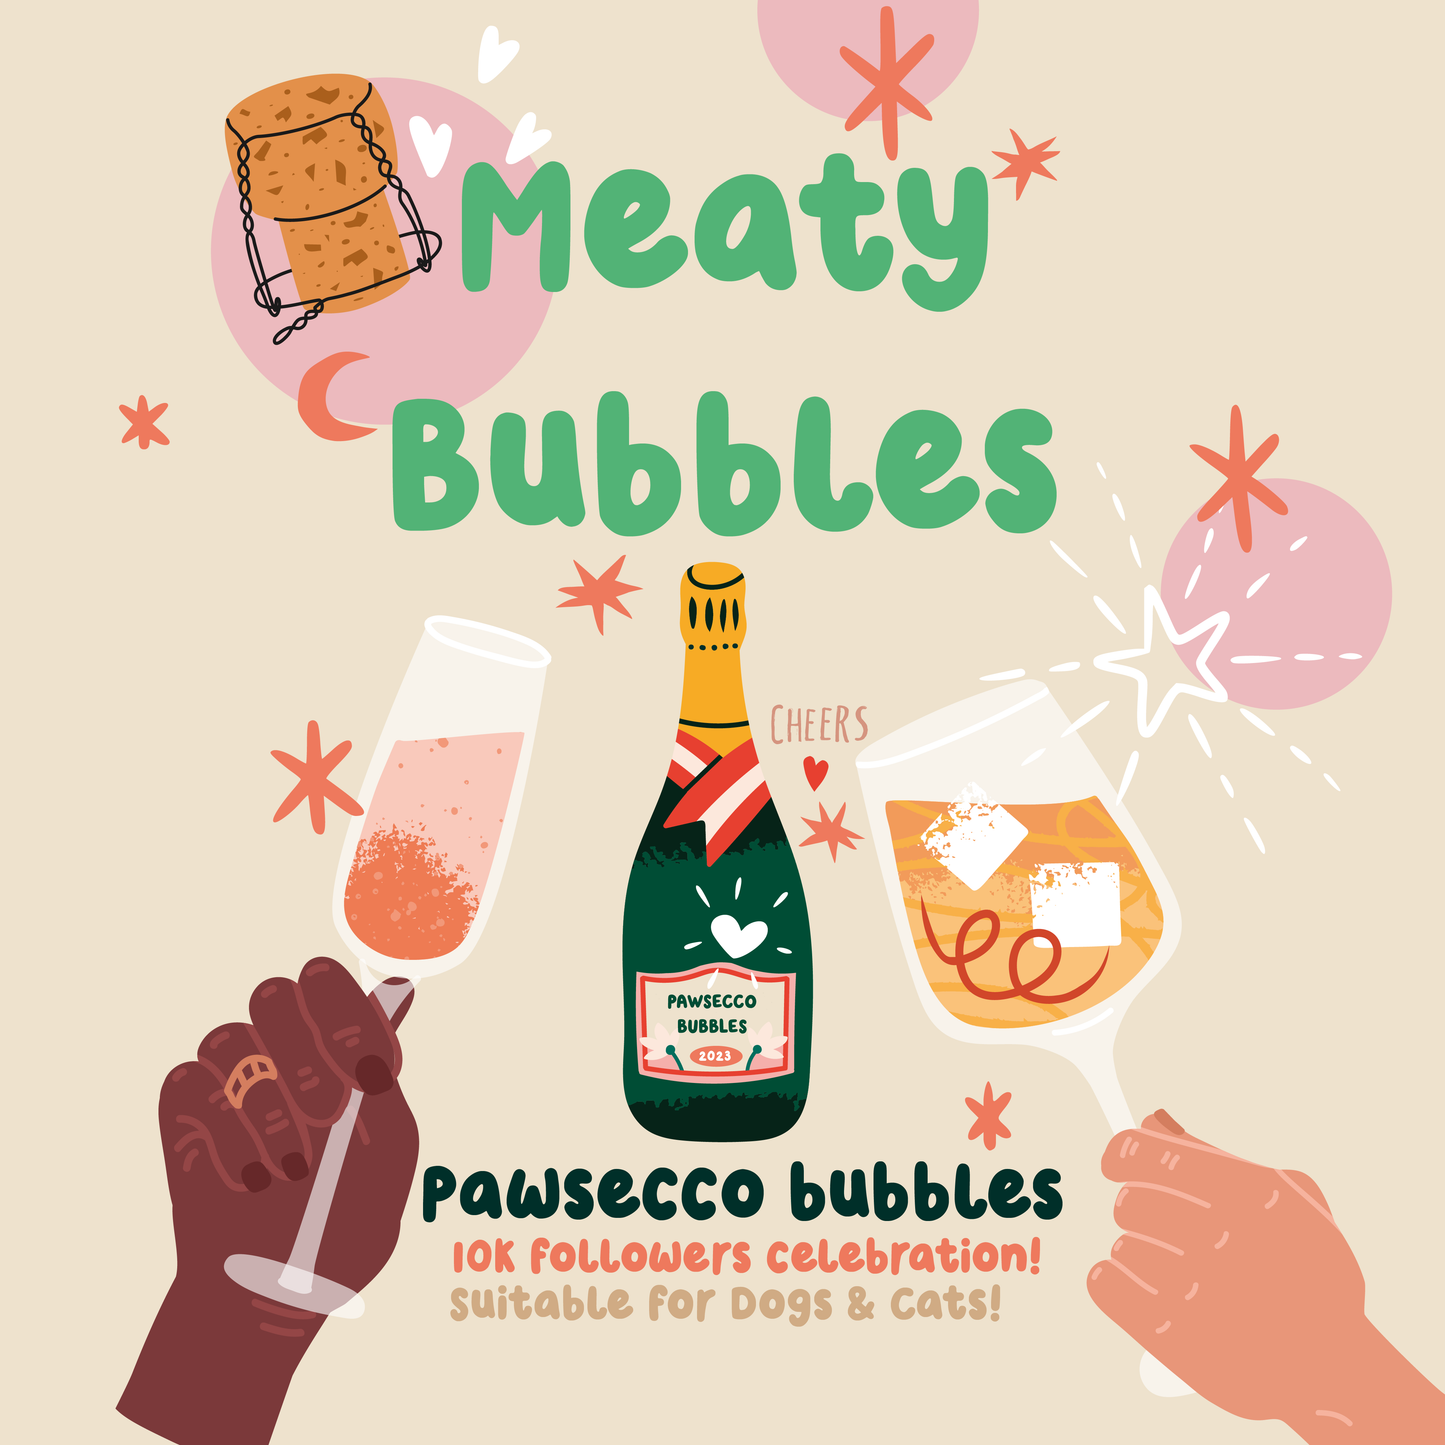 Pawsecco Bubbles